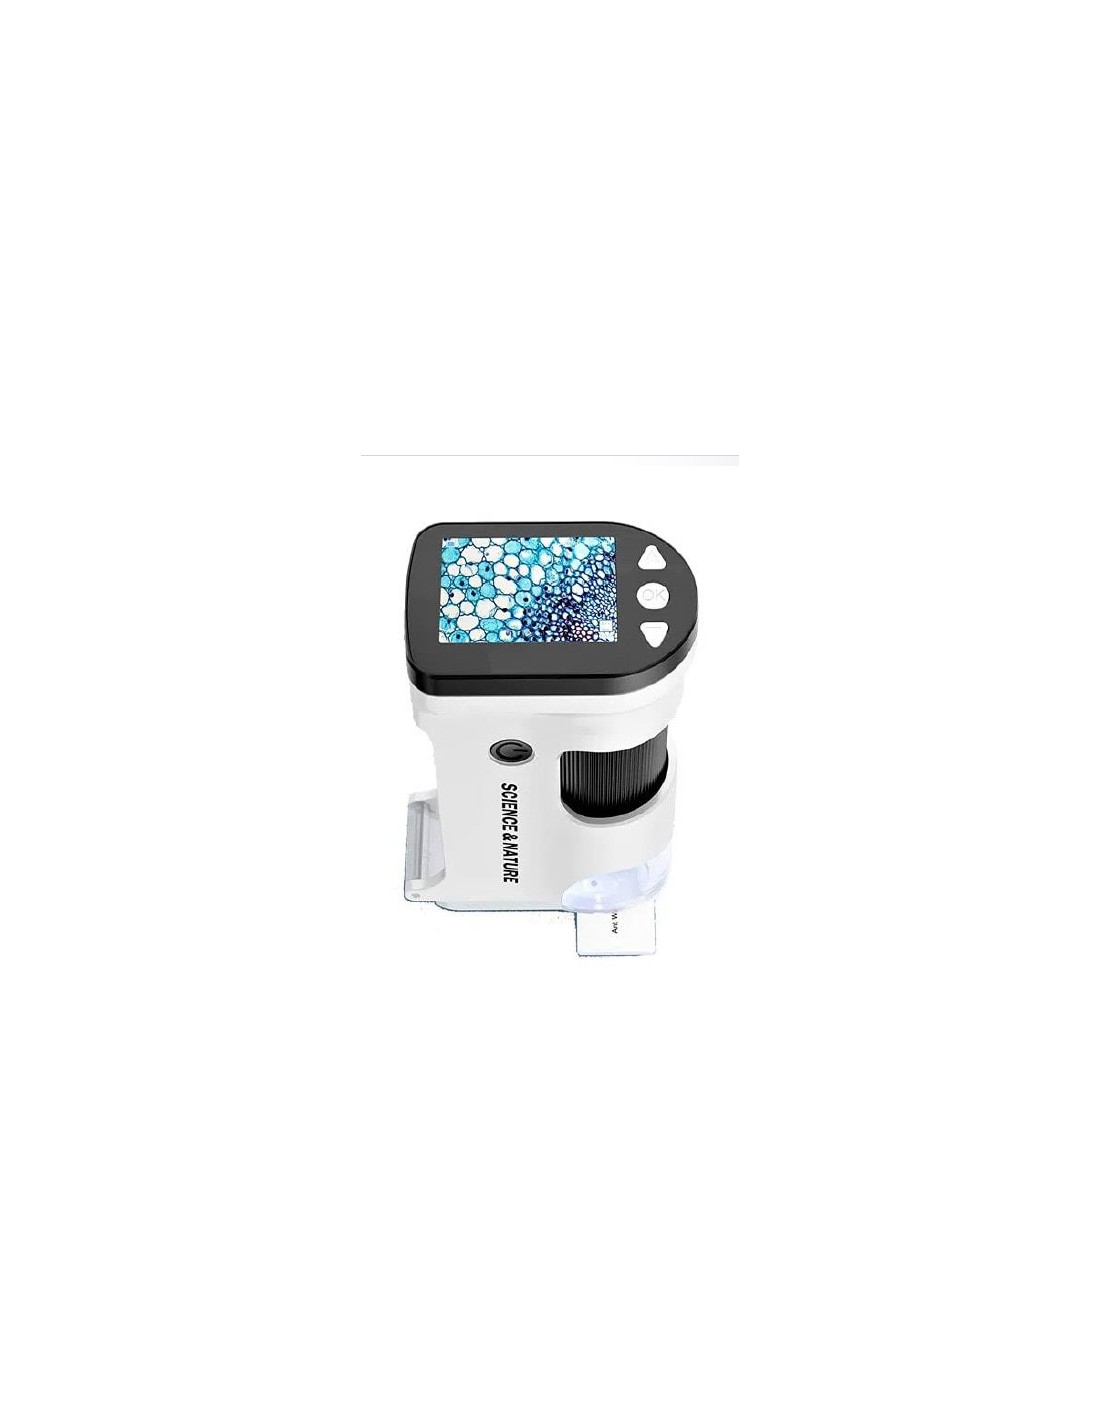  Il Microscopio digitale DiProgress MIC270 è uno strumento portatile e facile da usare. 